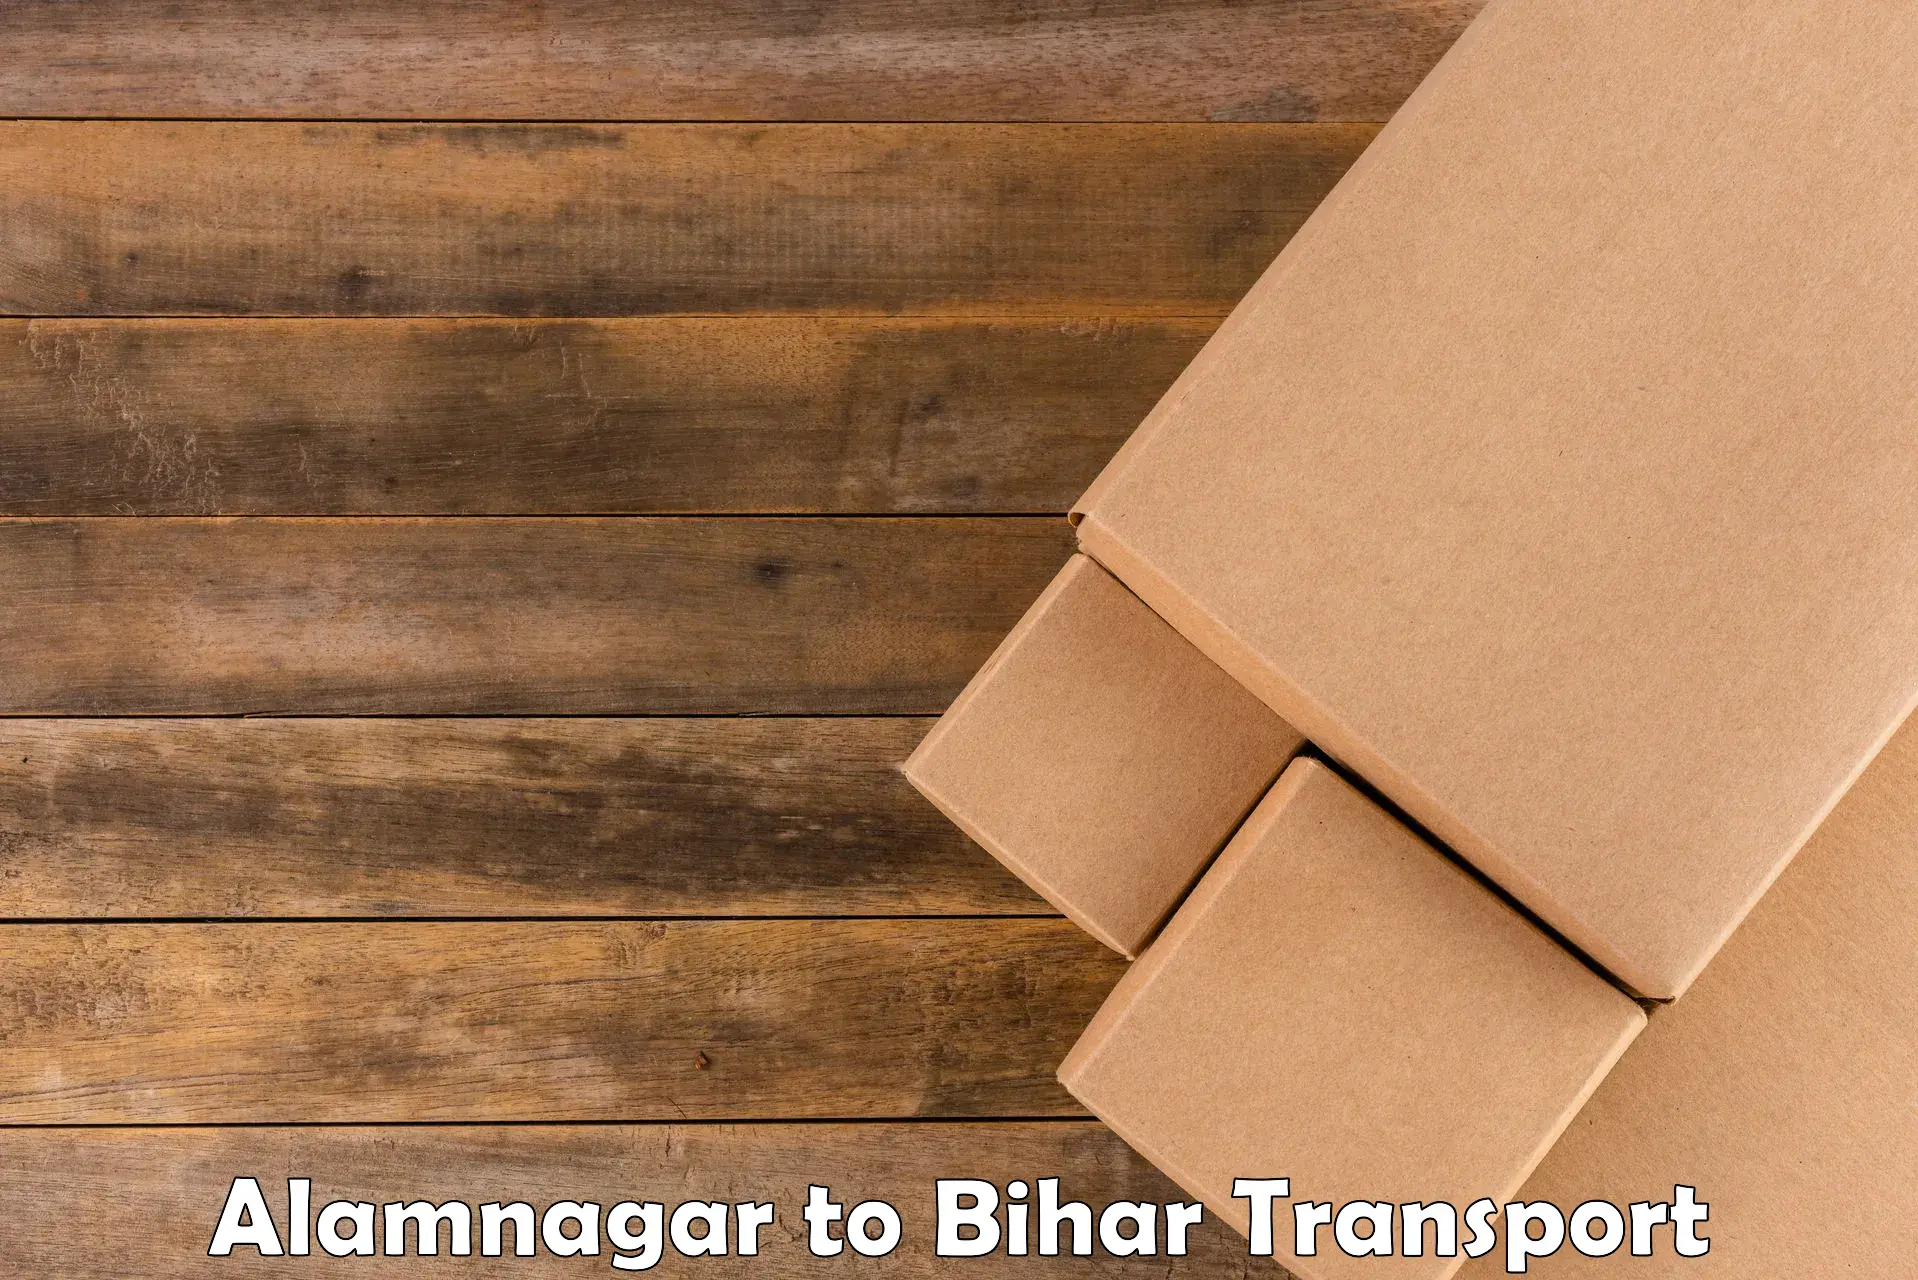 Lorry transport service Alamnagar to Katihar